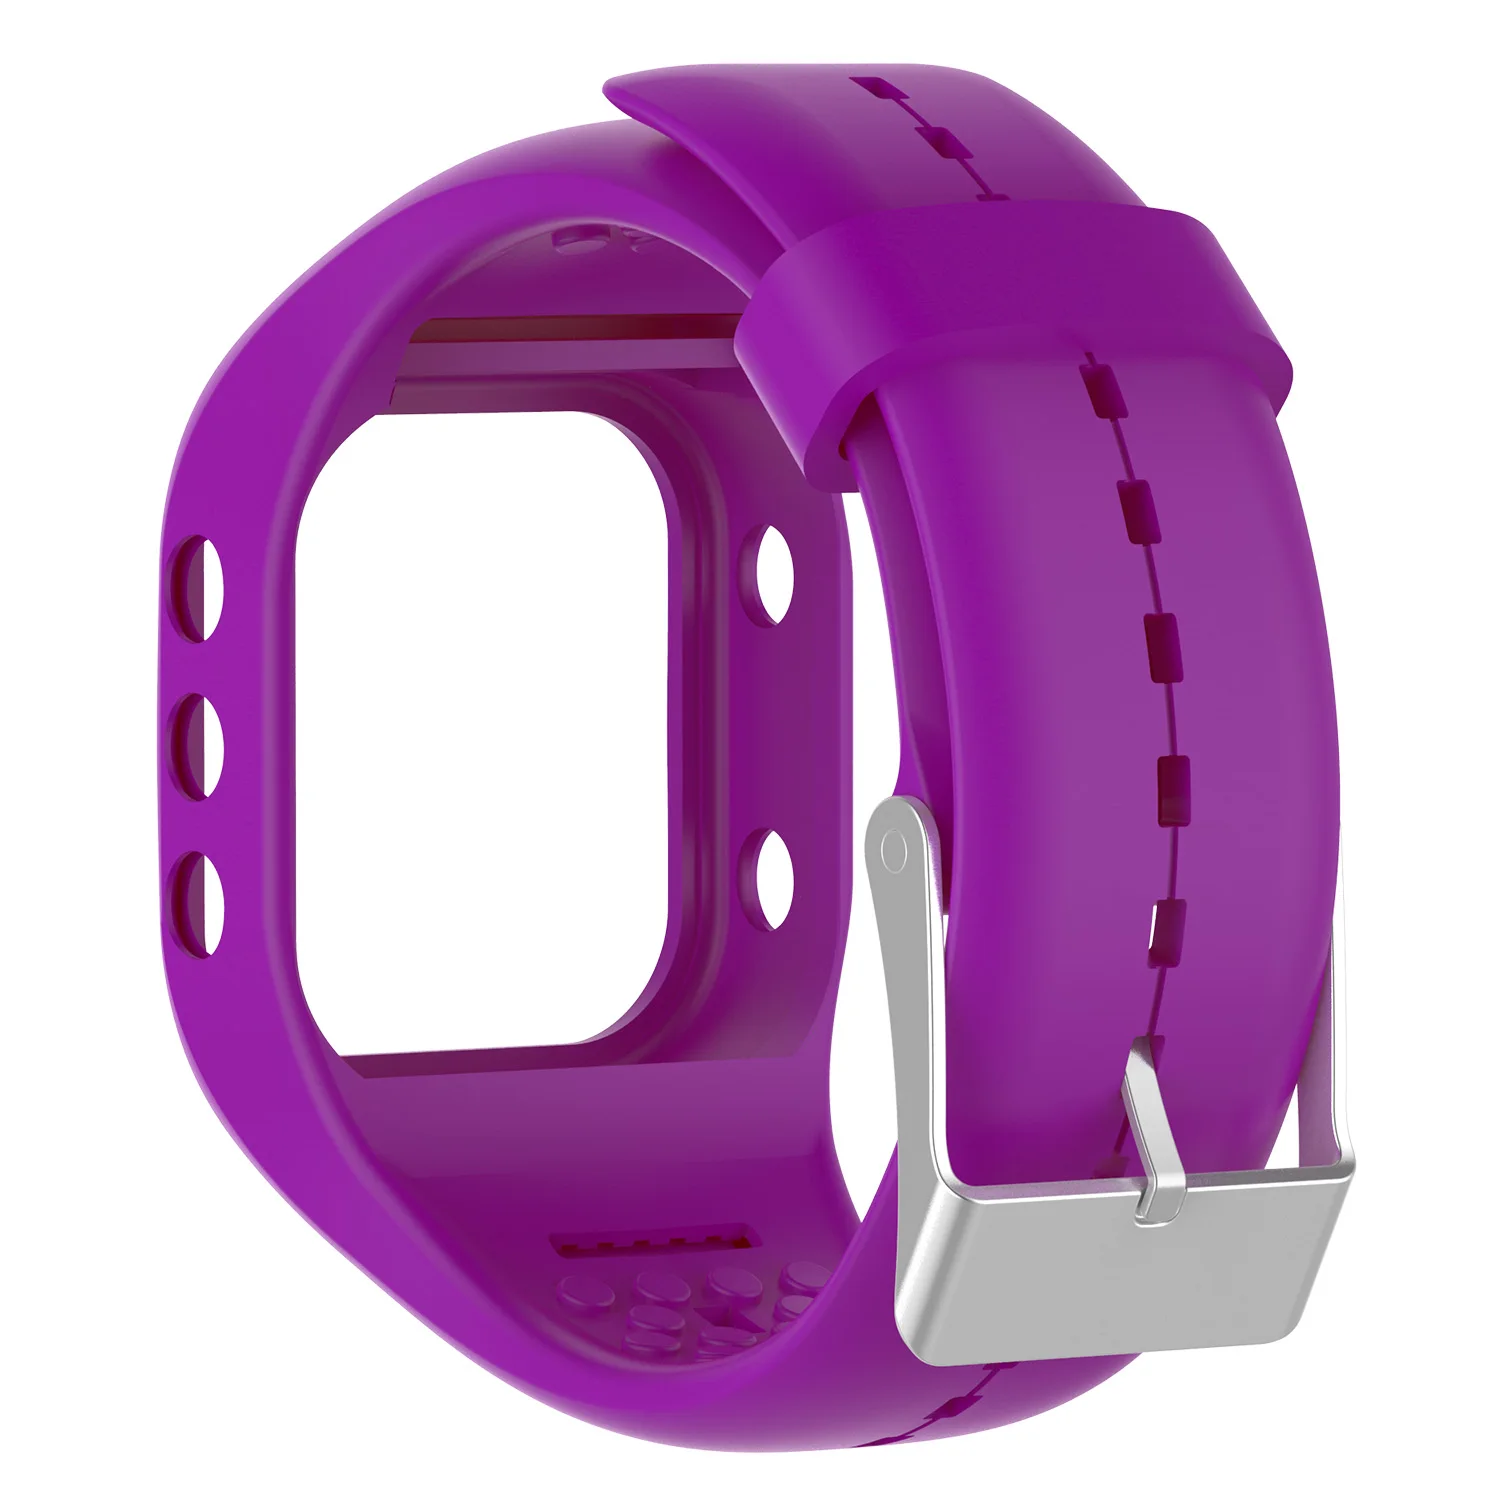 Силиконовые для фитнеса сменный ремешок на запястье для Polar A300 аксессуары для умных часов фитнес-часы спортивные часы - Цвет: Фиолетовый